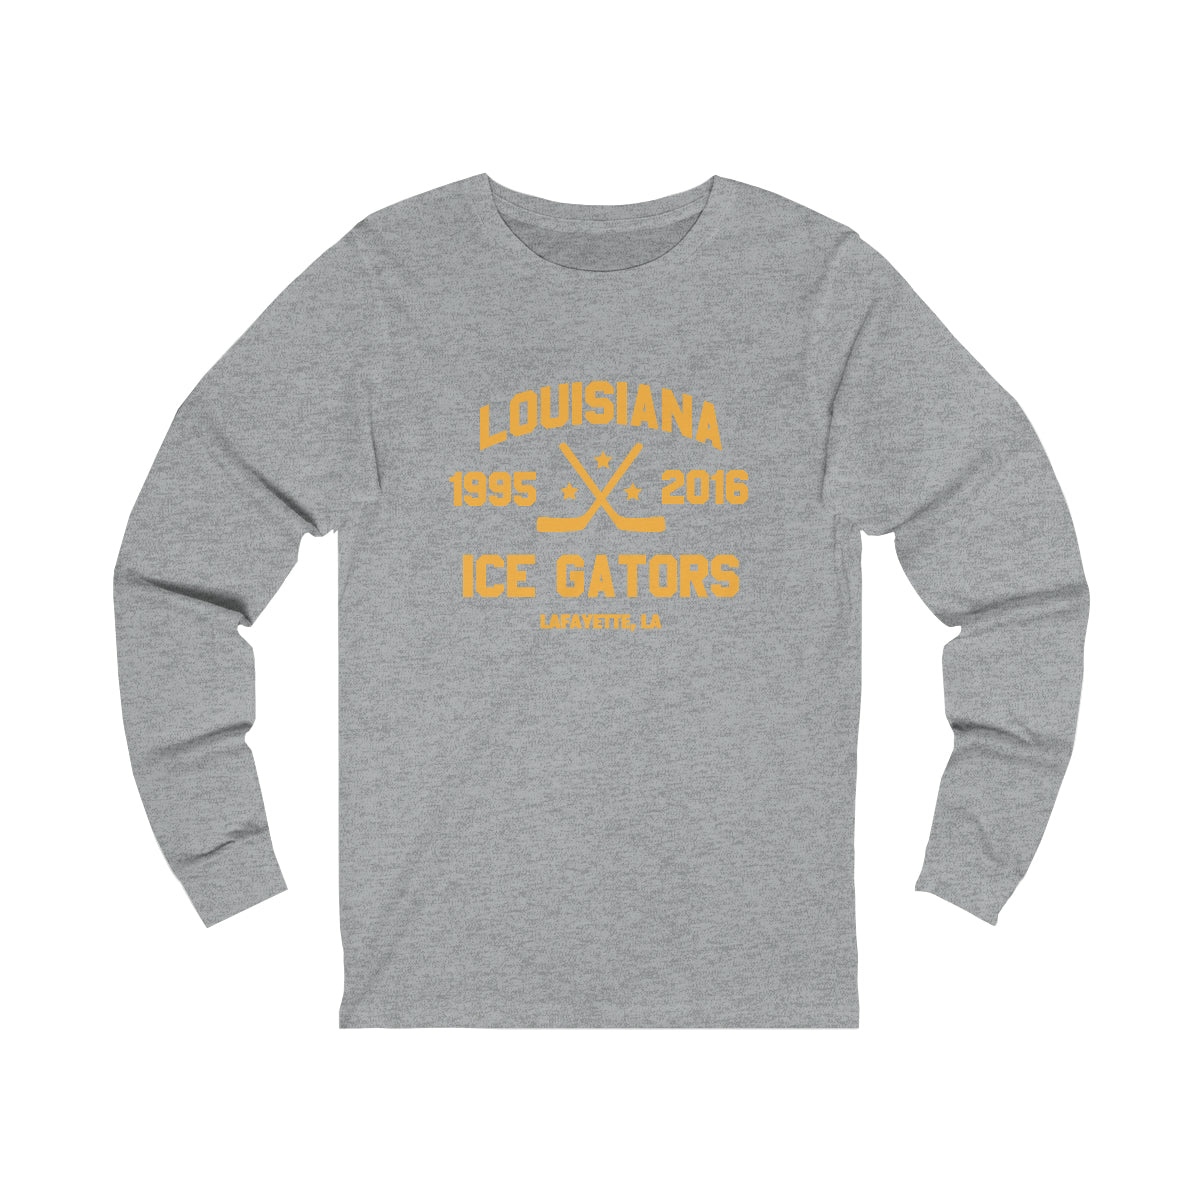 Louisiana Ice Gators Hockey T-Shirt